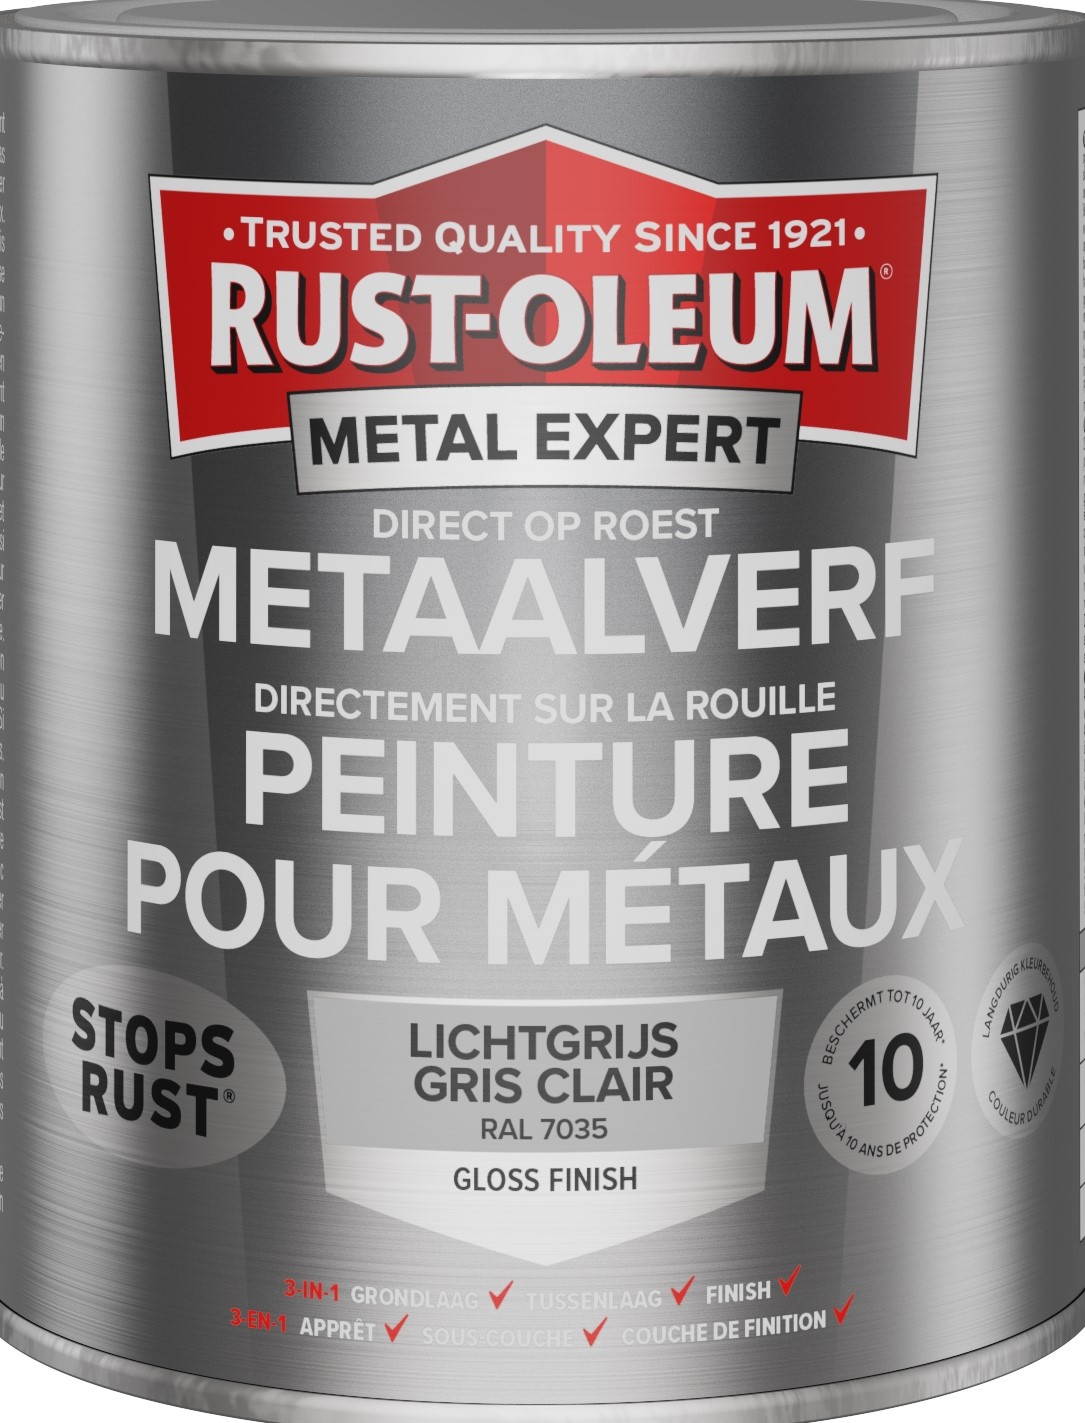 rust-oleum metal expert metaalverf gloss ral 7035 0.75 ltr